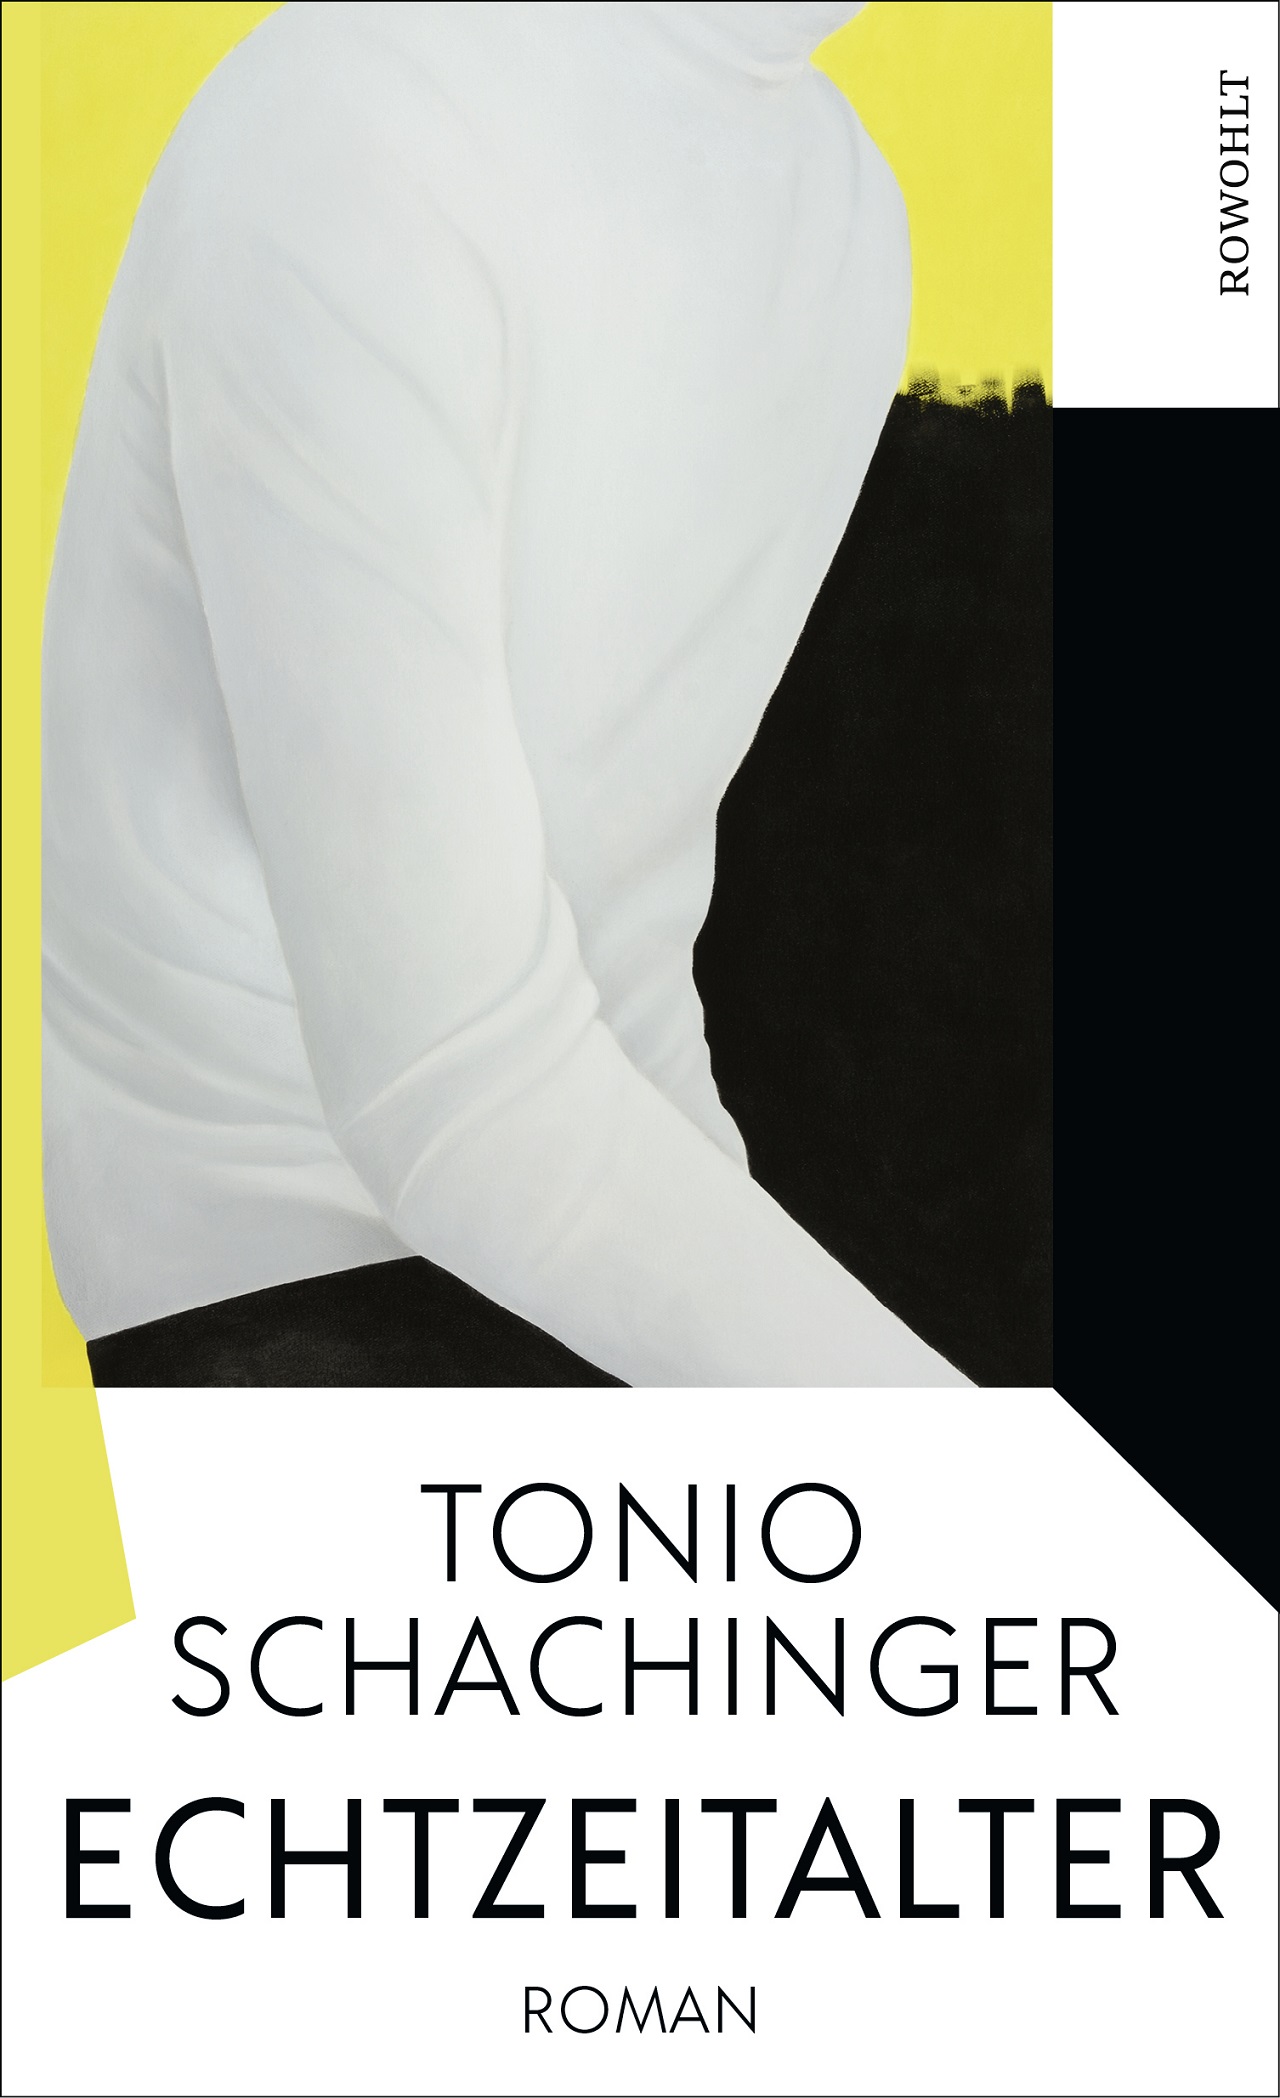 Tonio Schachinger Echtzeitalter